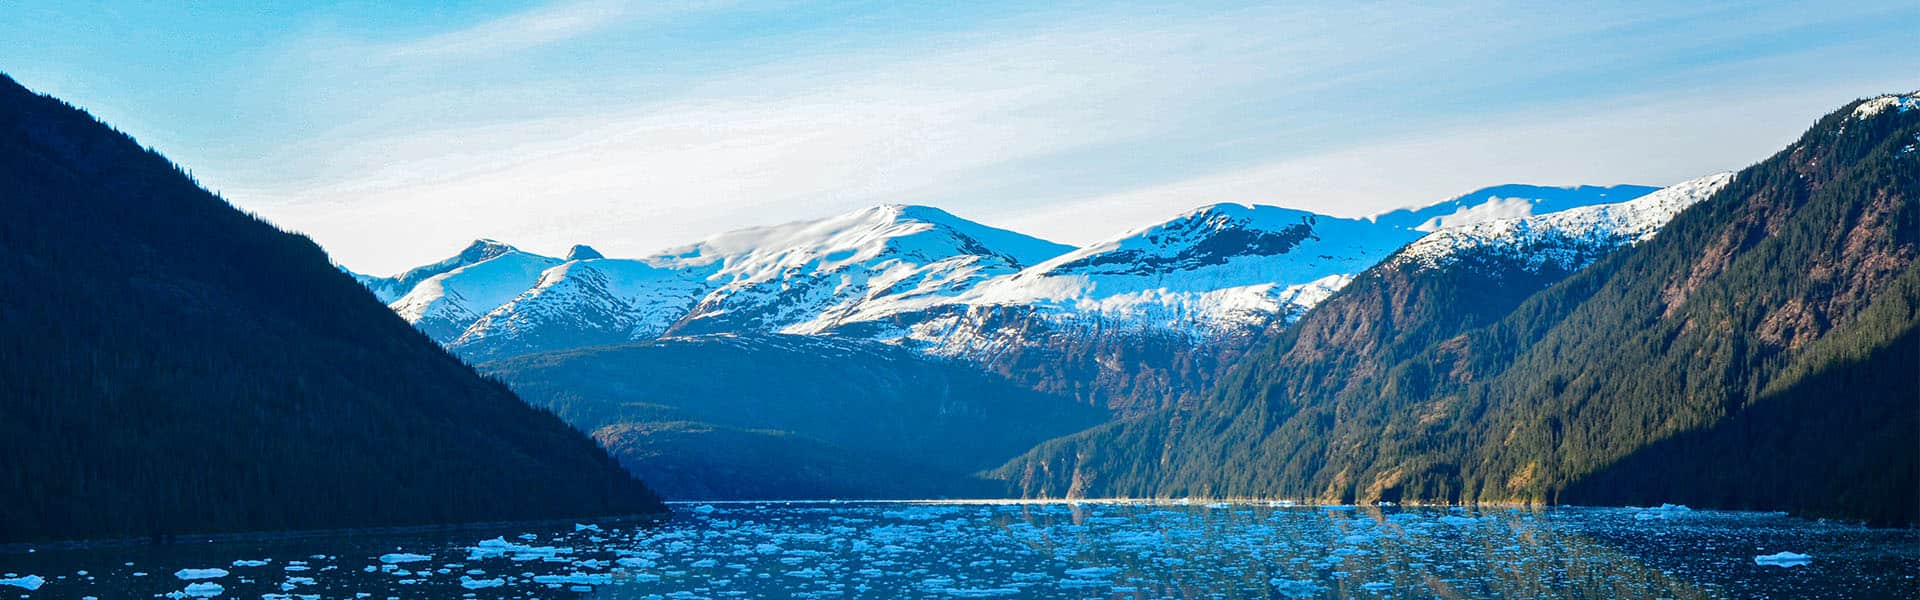 אלסקה: קרחון דוז, ג'ונו וקטצ'יקן